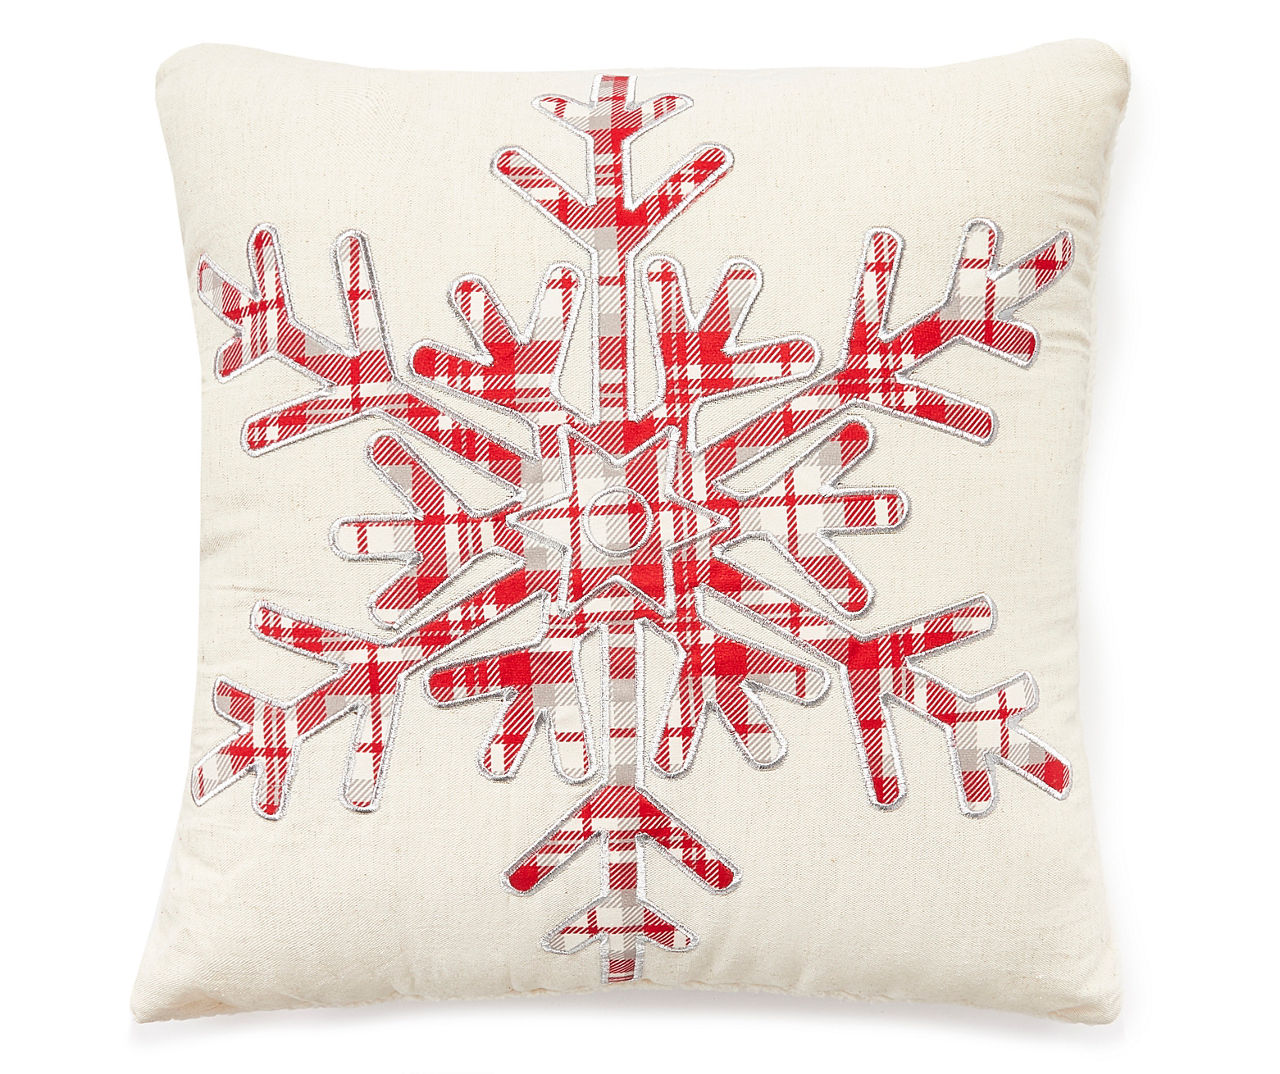 Beige Snowflake Christmas Throw Pillow